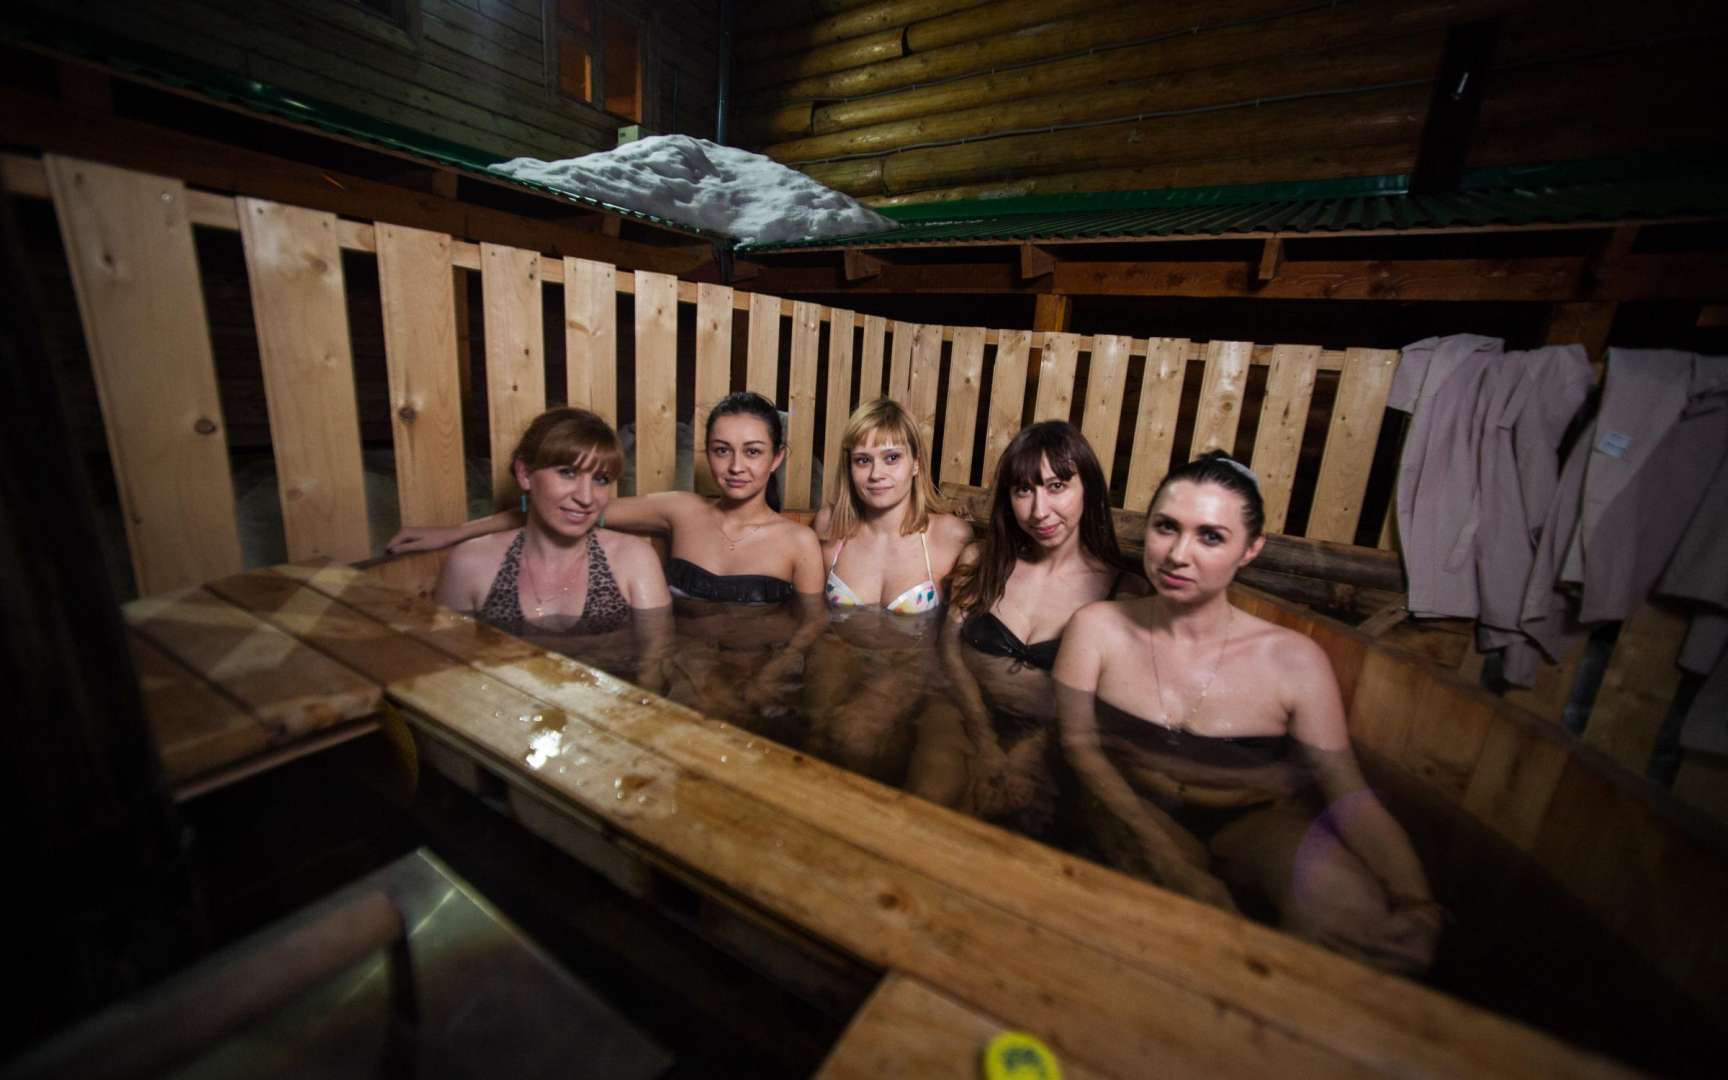 City sauna sheffield documentary